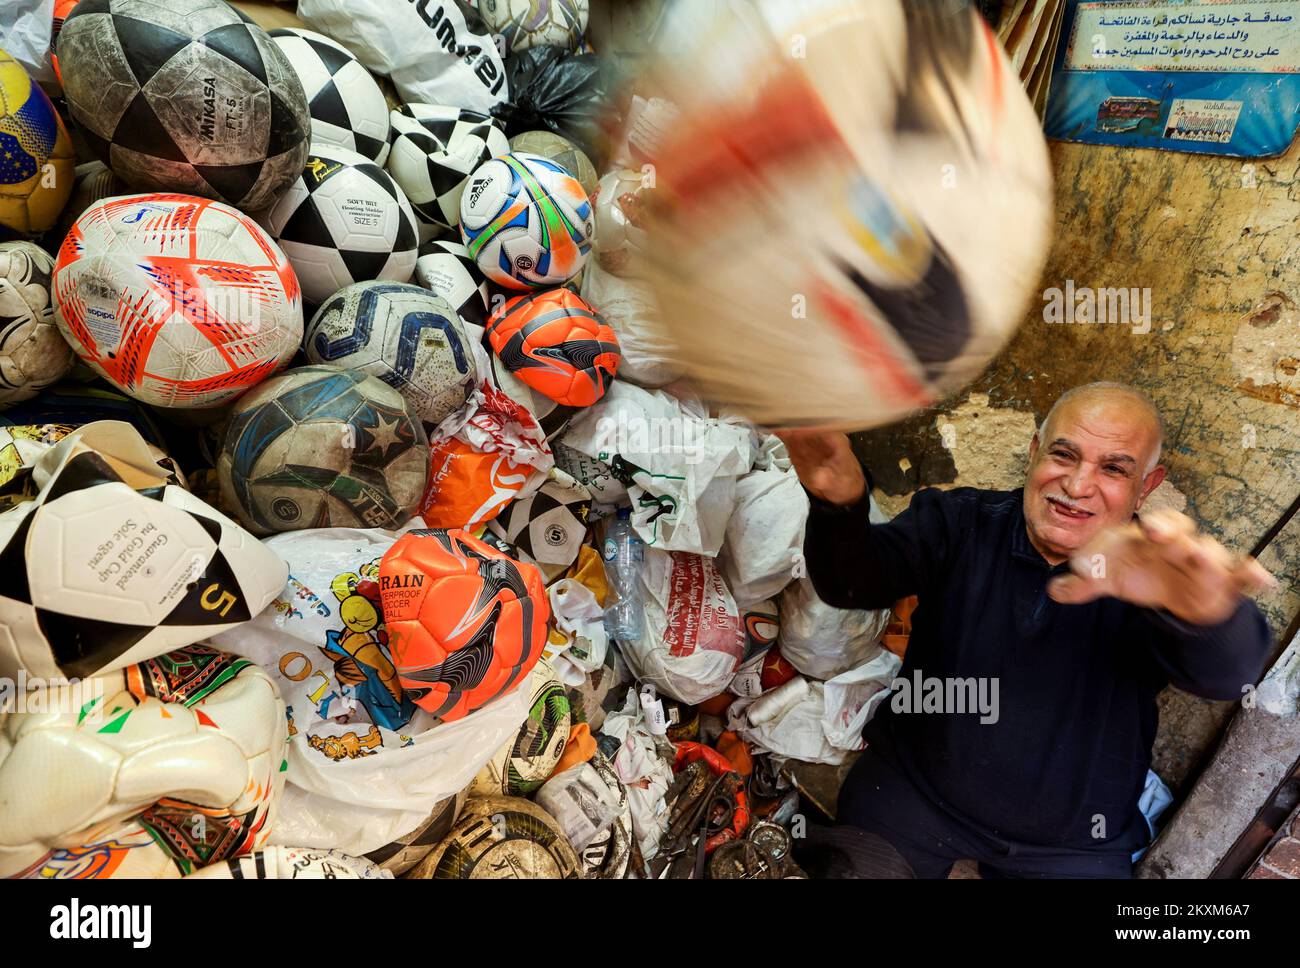 Mostafa Mahmoud, de 68 años, reacciona cuando intenta atrapar una pelota de fútbol, ha estado arreglando y fabricando pelotas desde hace 50 años, en El Cairo, Egipto, el 30 de noviembre de 2022. REUTERS/Mohamed Abd El Ghany Foto de stock